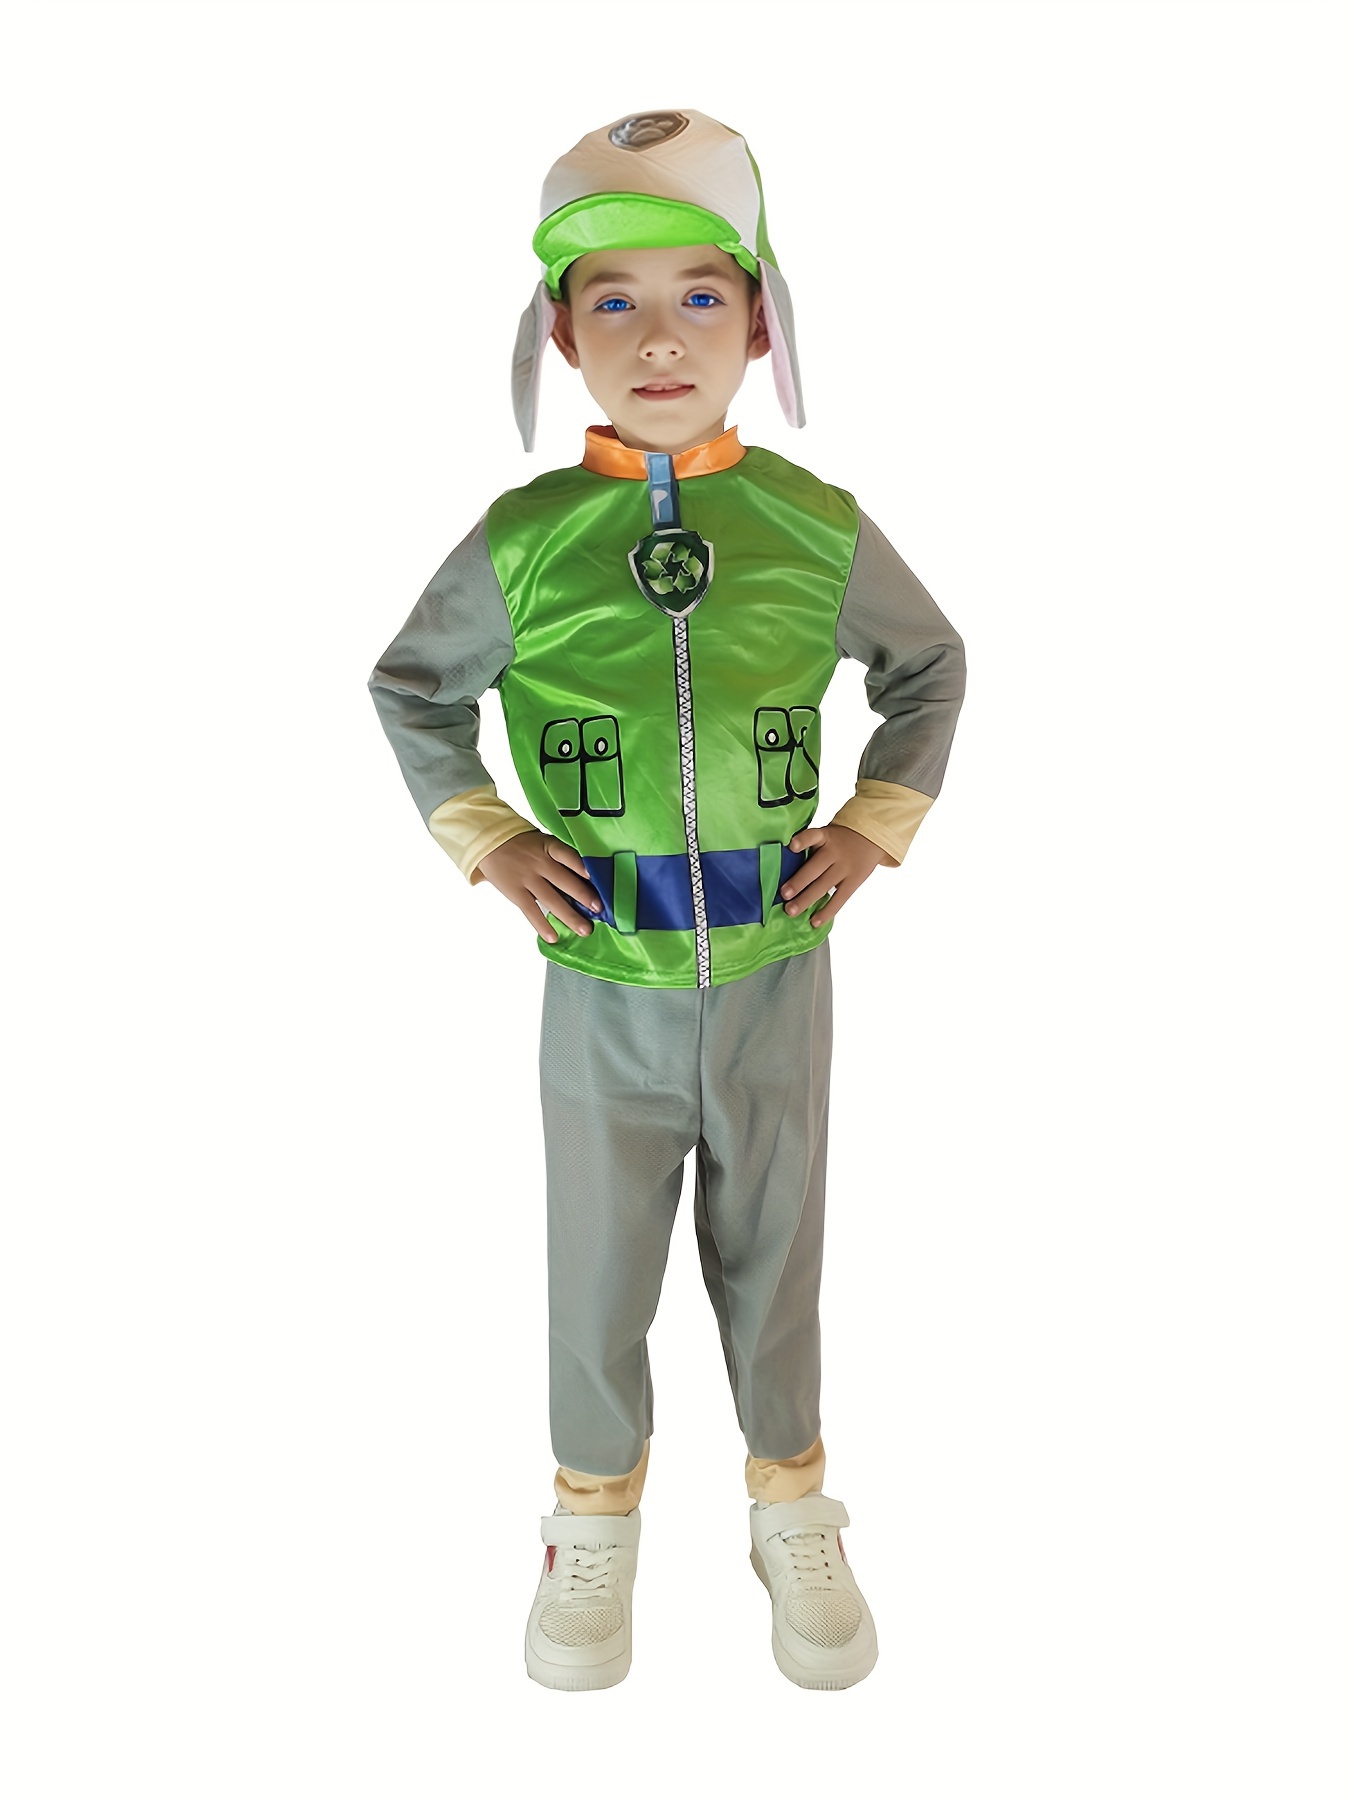 Free: Ben 10 Toy Halloween costume Clothing, Ben 10 Alien Force